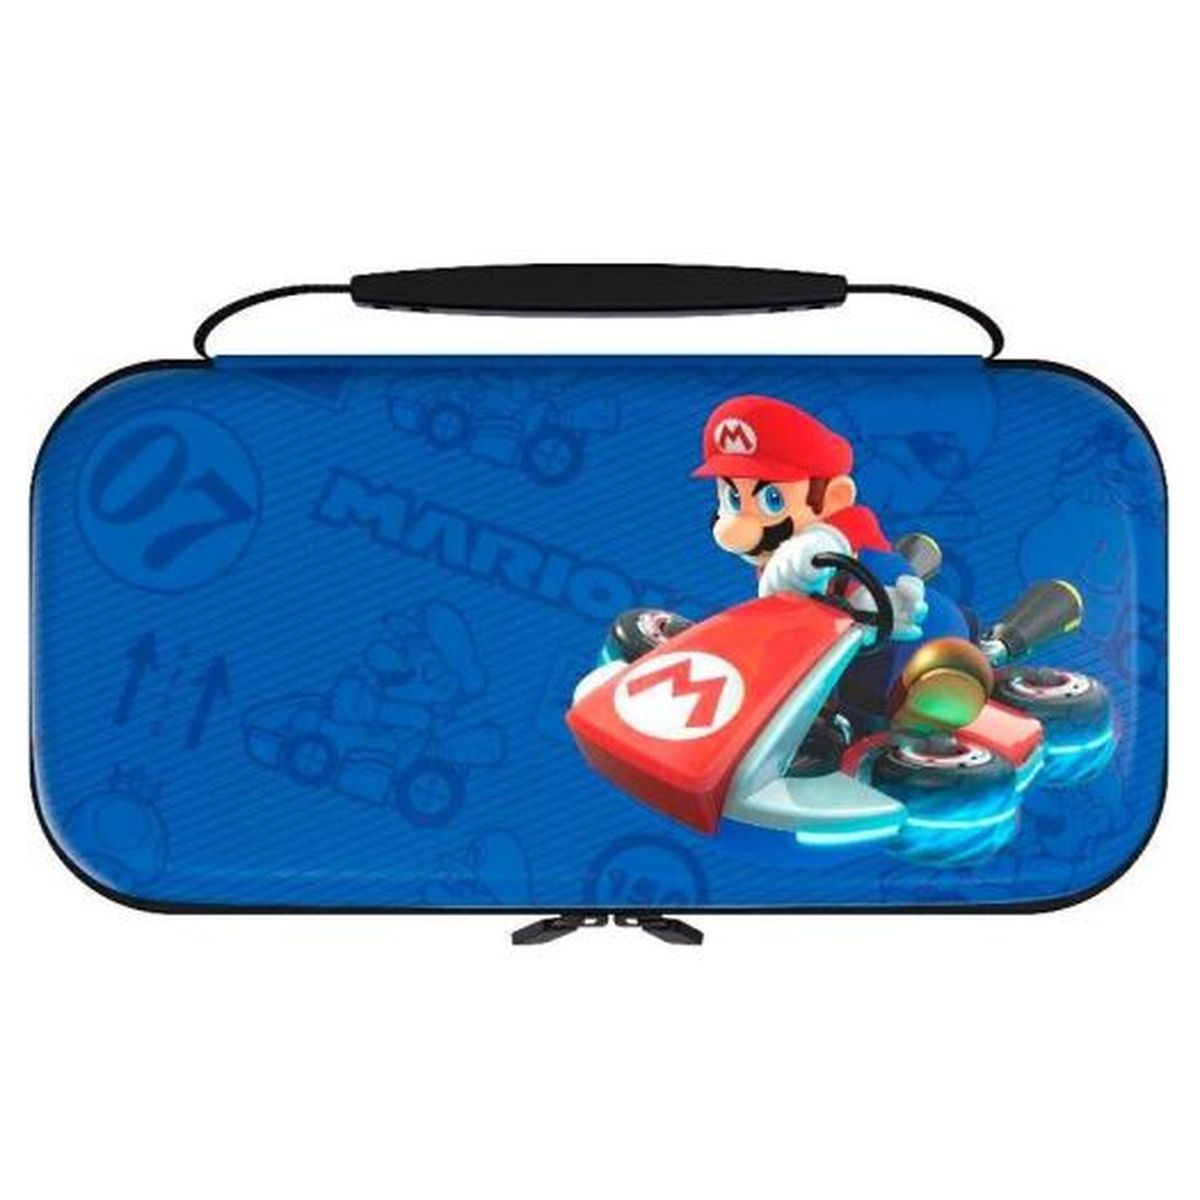 Étui protecteur pour Nintendo Switch™ - Mario Kart™ - Site officiel Nintendo